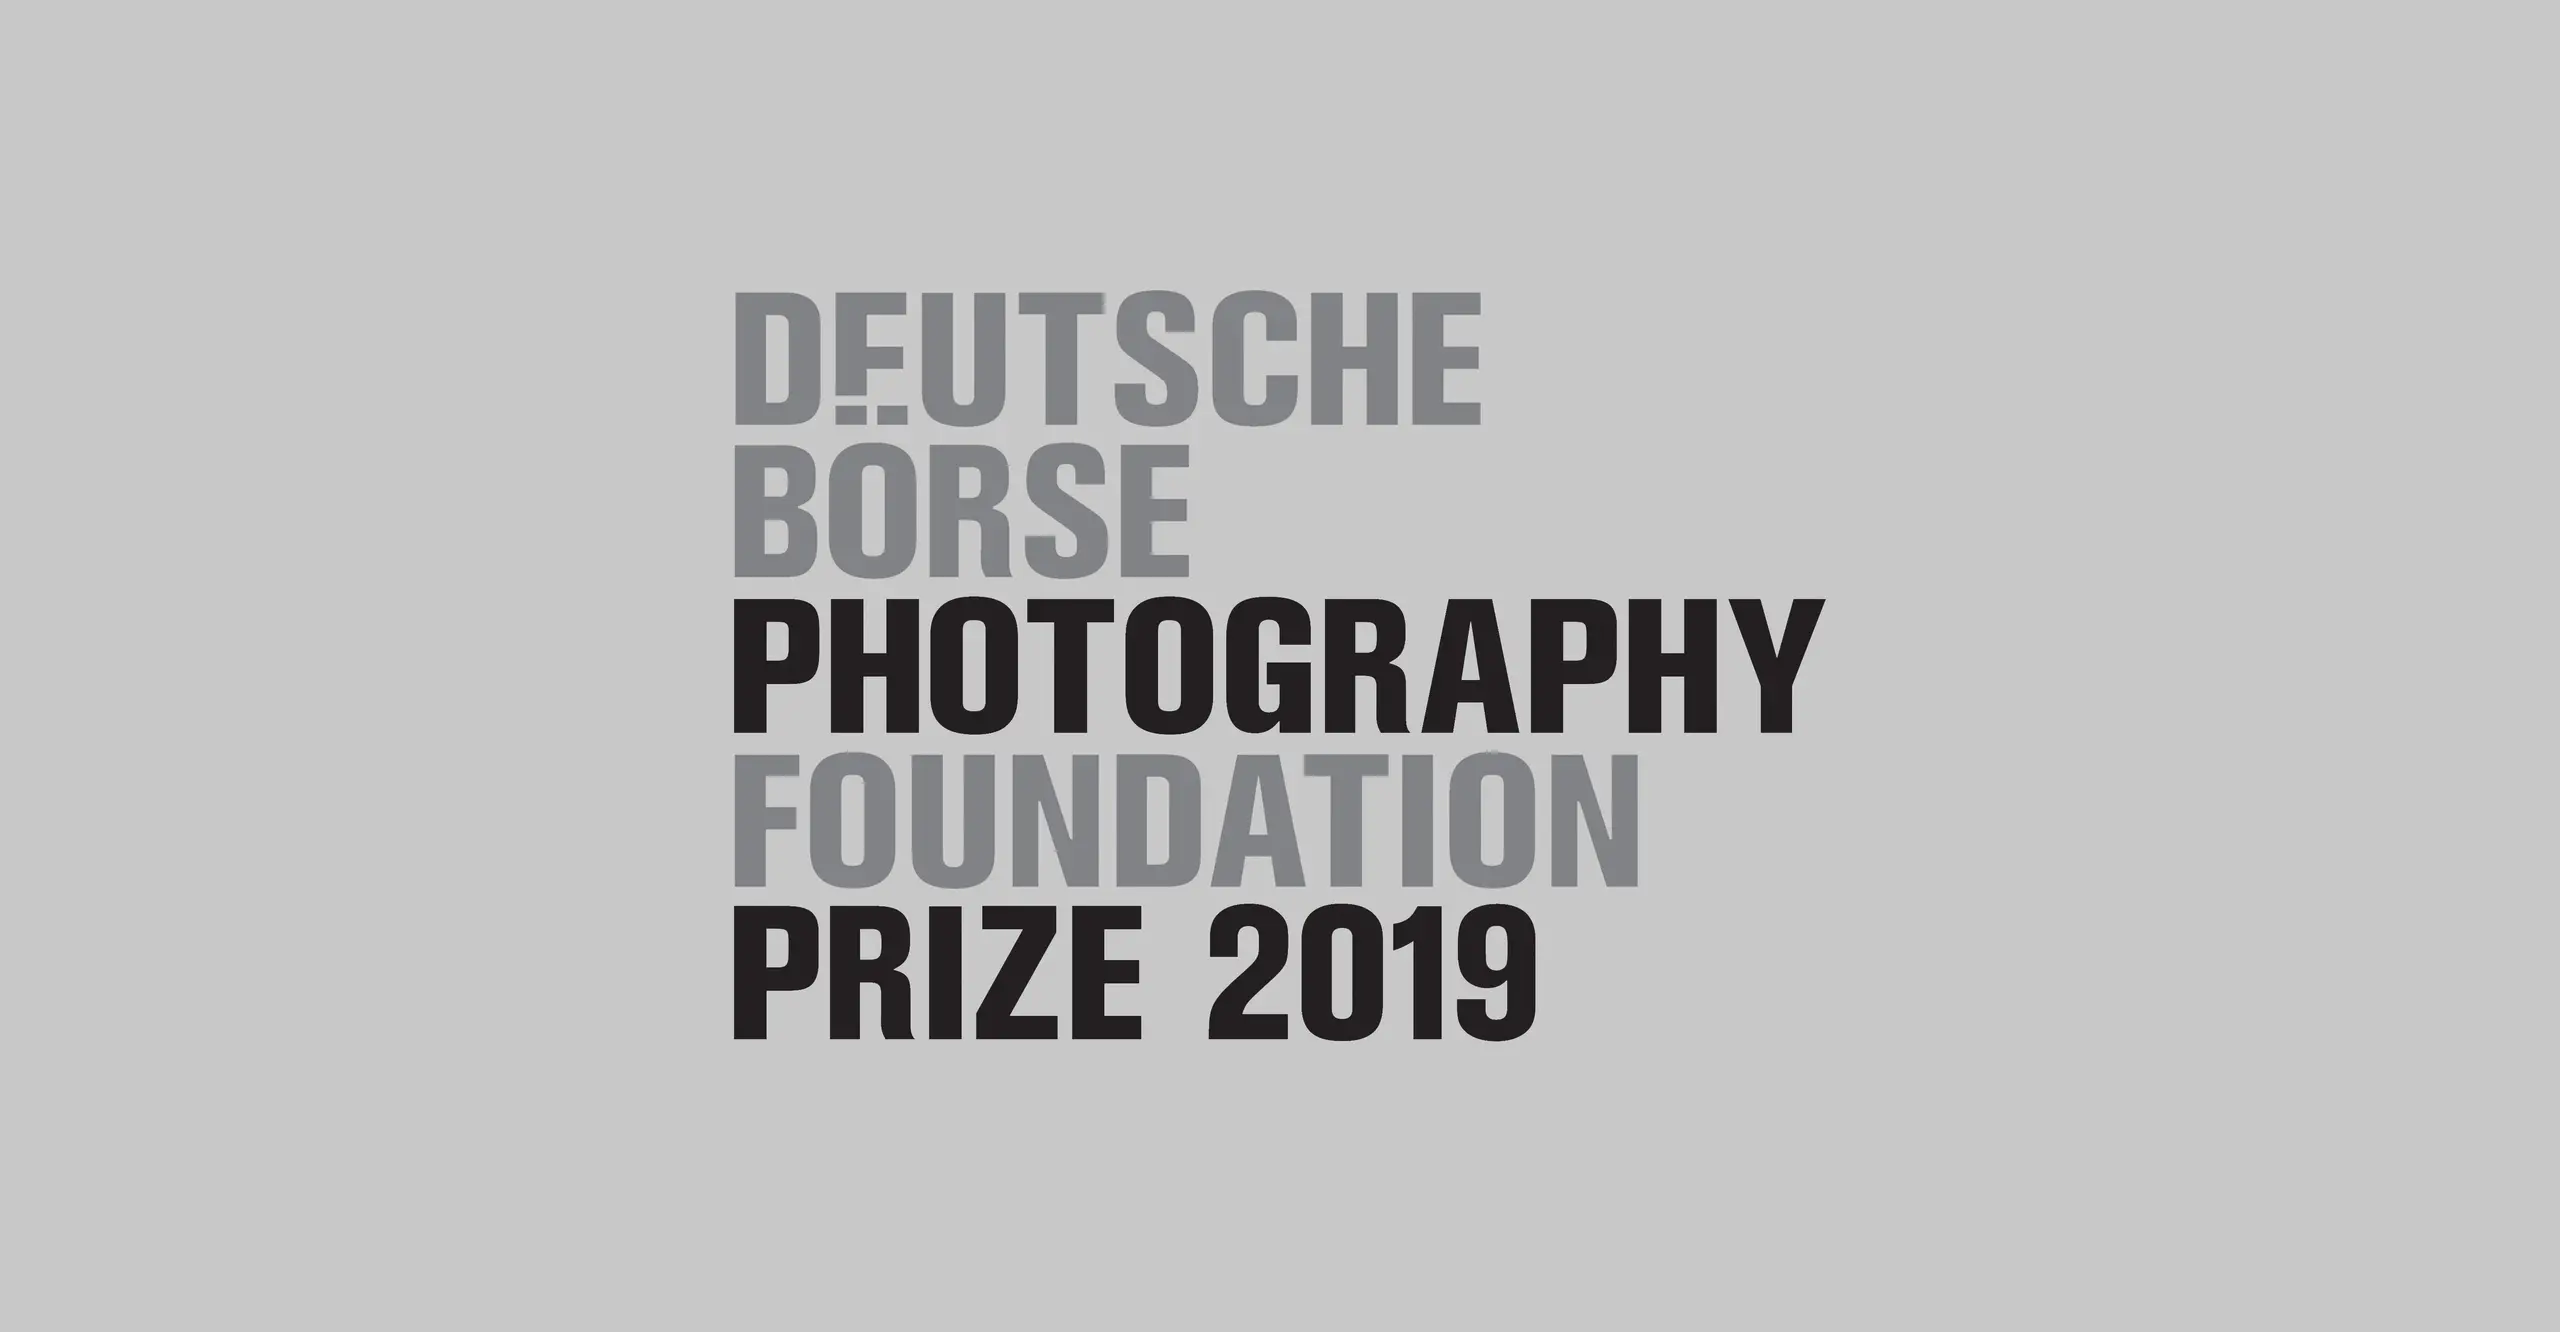 Deutsche Börse Photography Foundation Prize 2019